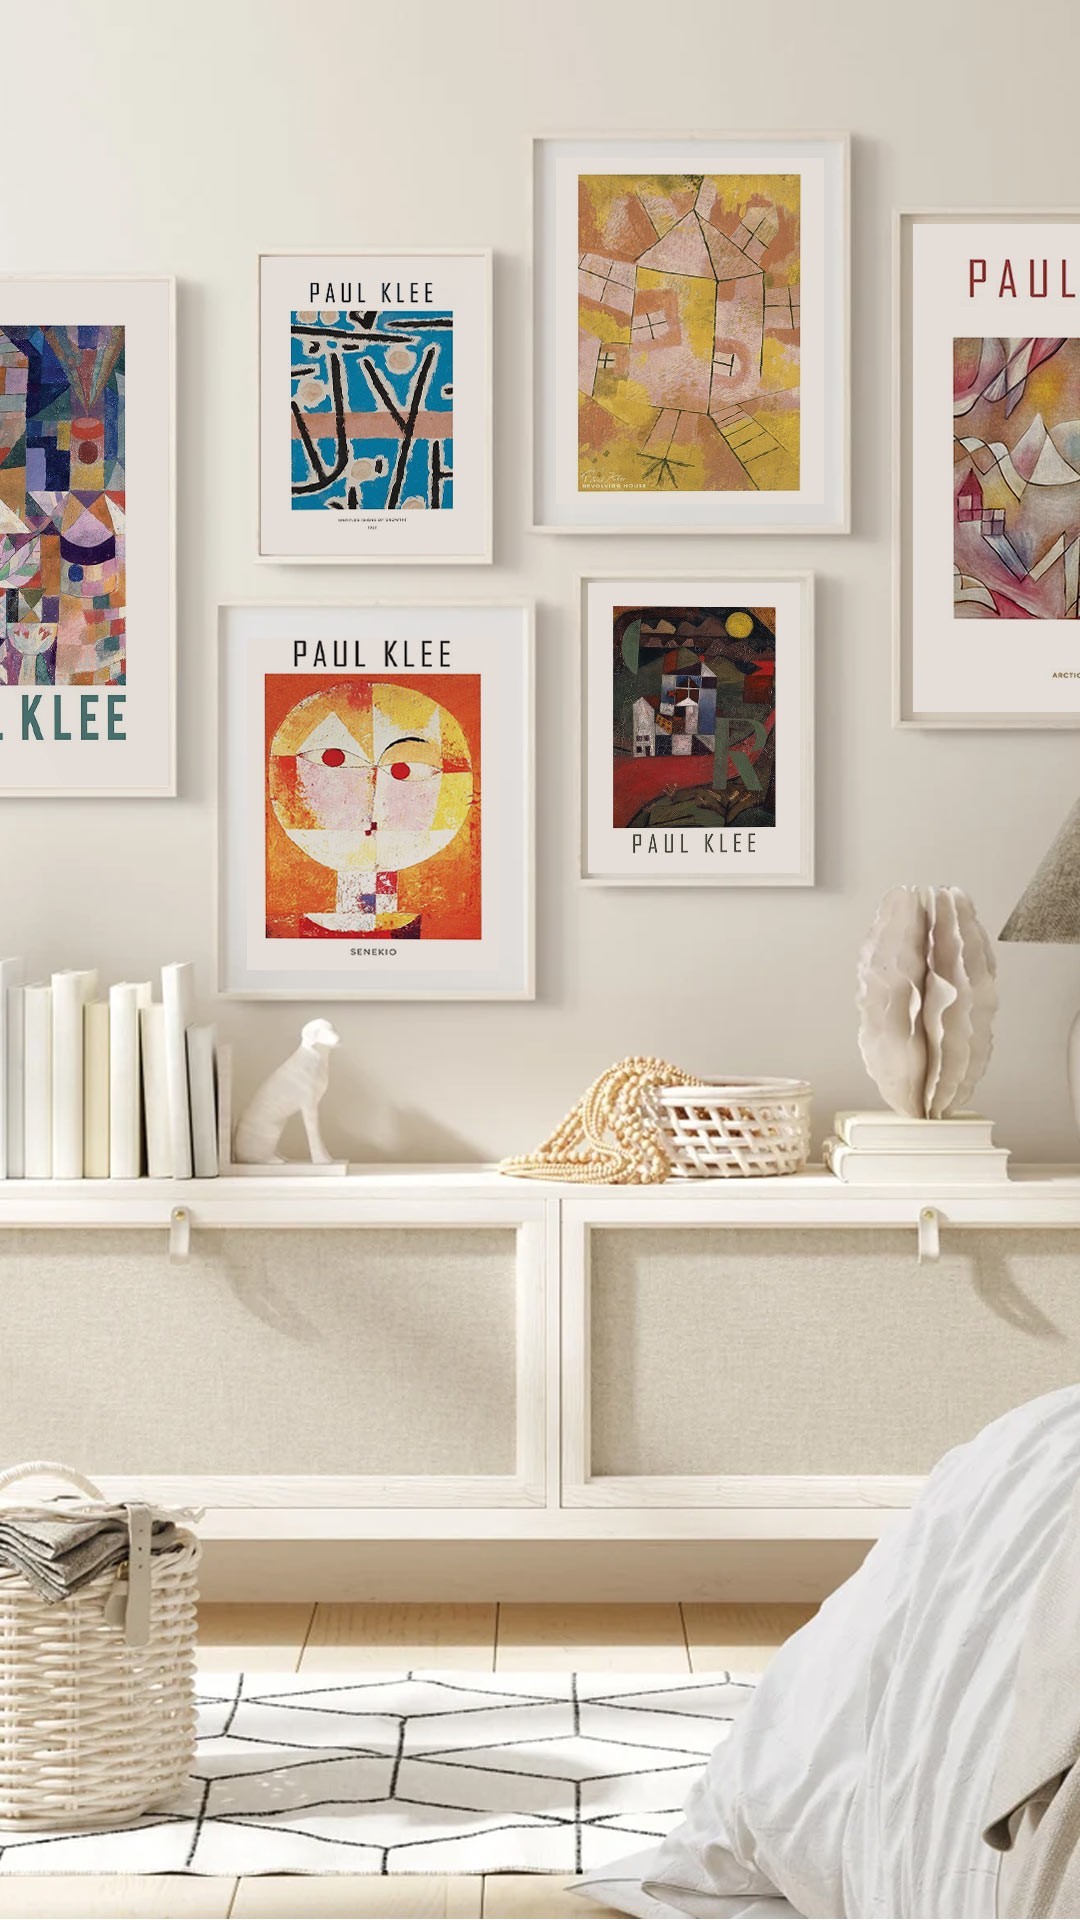 Αφίσες-Poster με έργα του Paul Klee